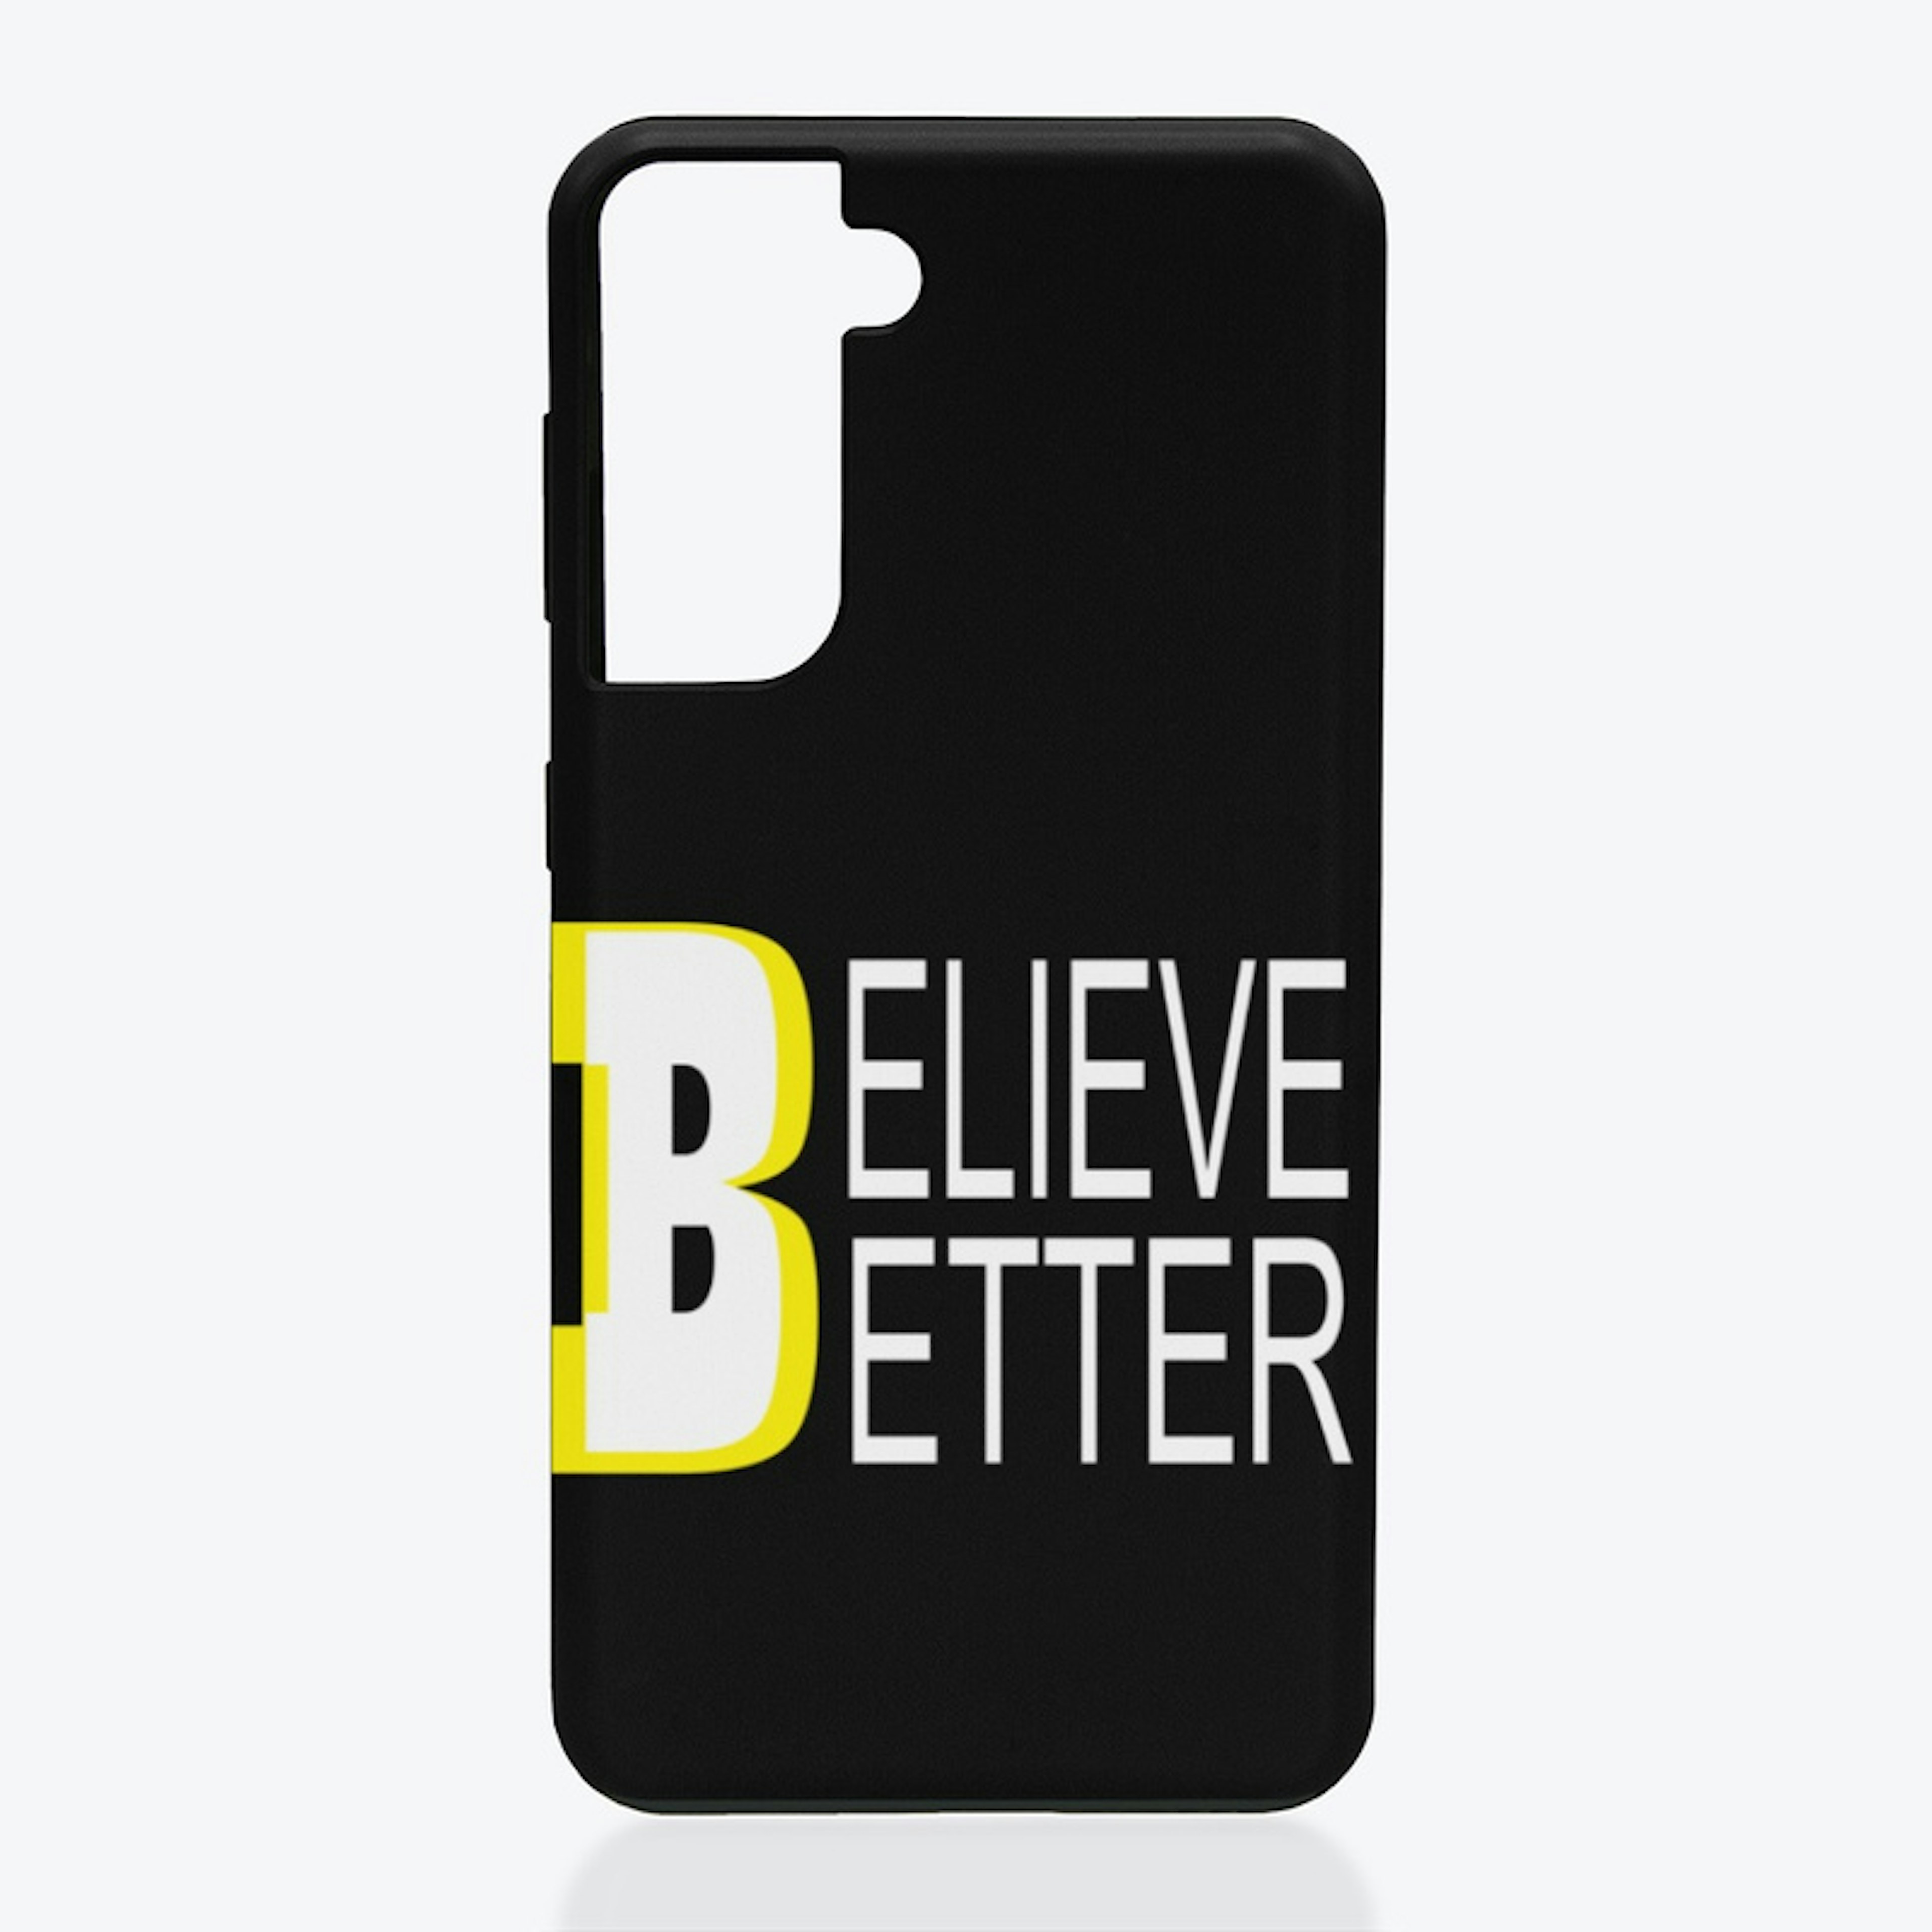 Believe Better